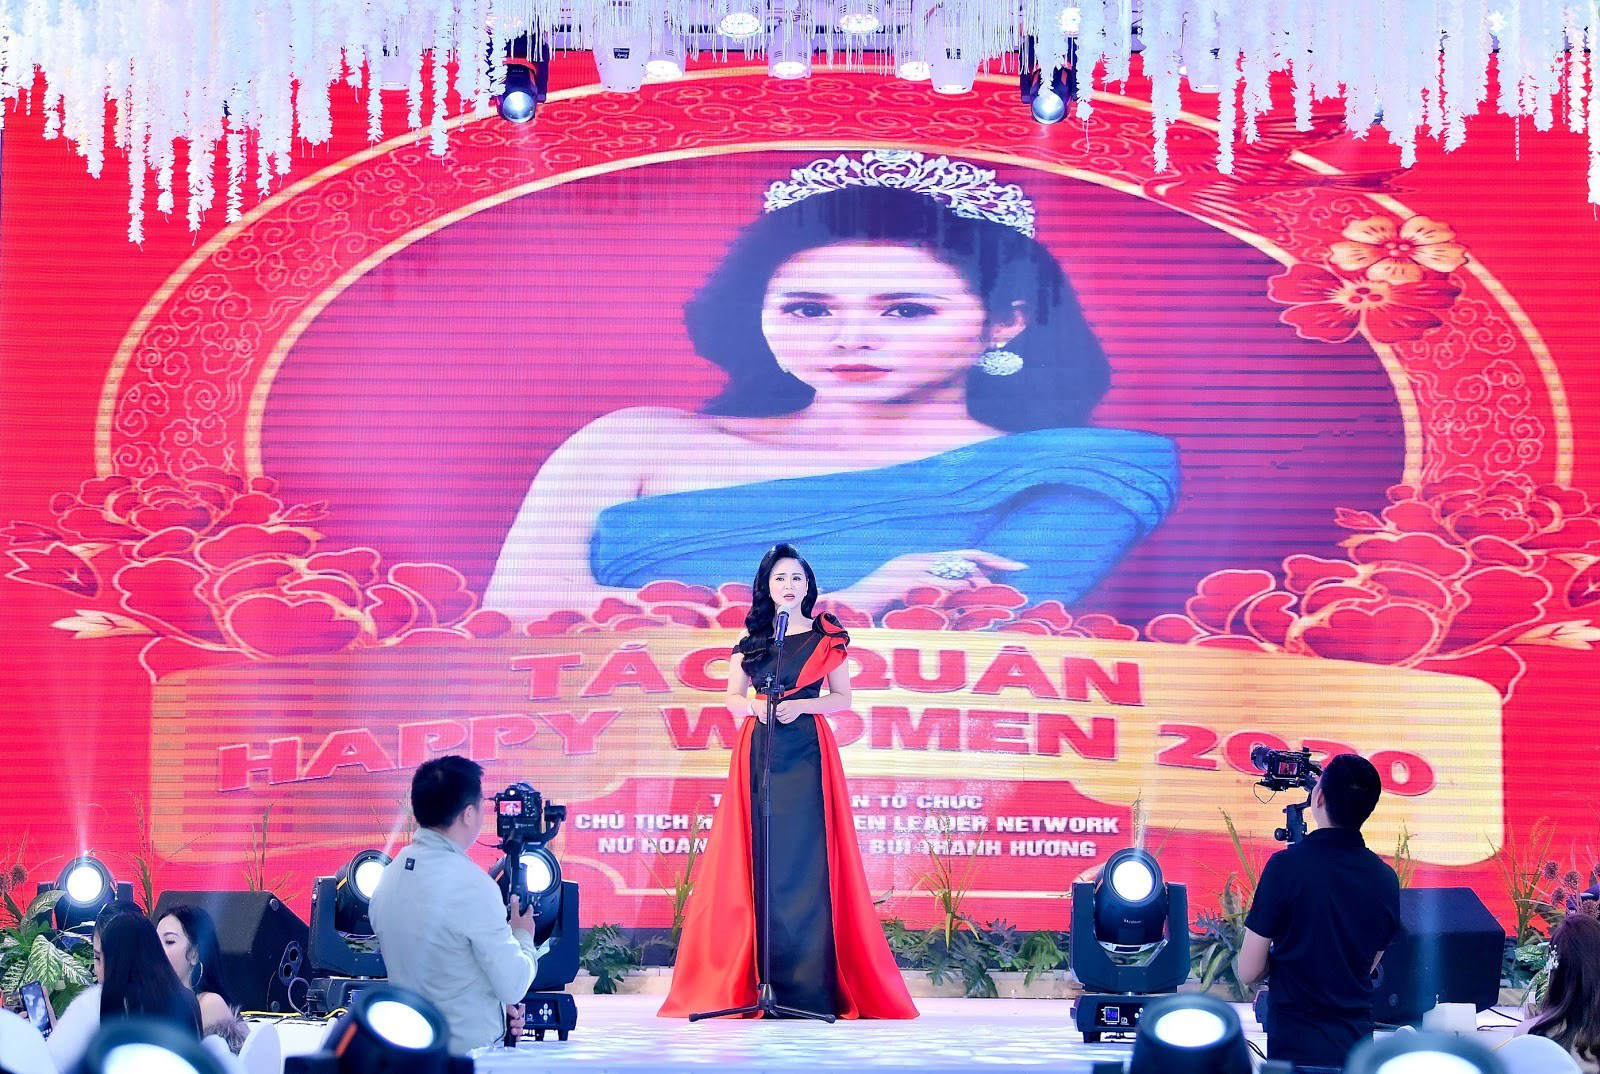 Chân dung Bùi Thanh Hương - Chủ tịch Happy Women - Trưởng ban tổ chức Táo quân 2021 - Ảnh 4.